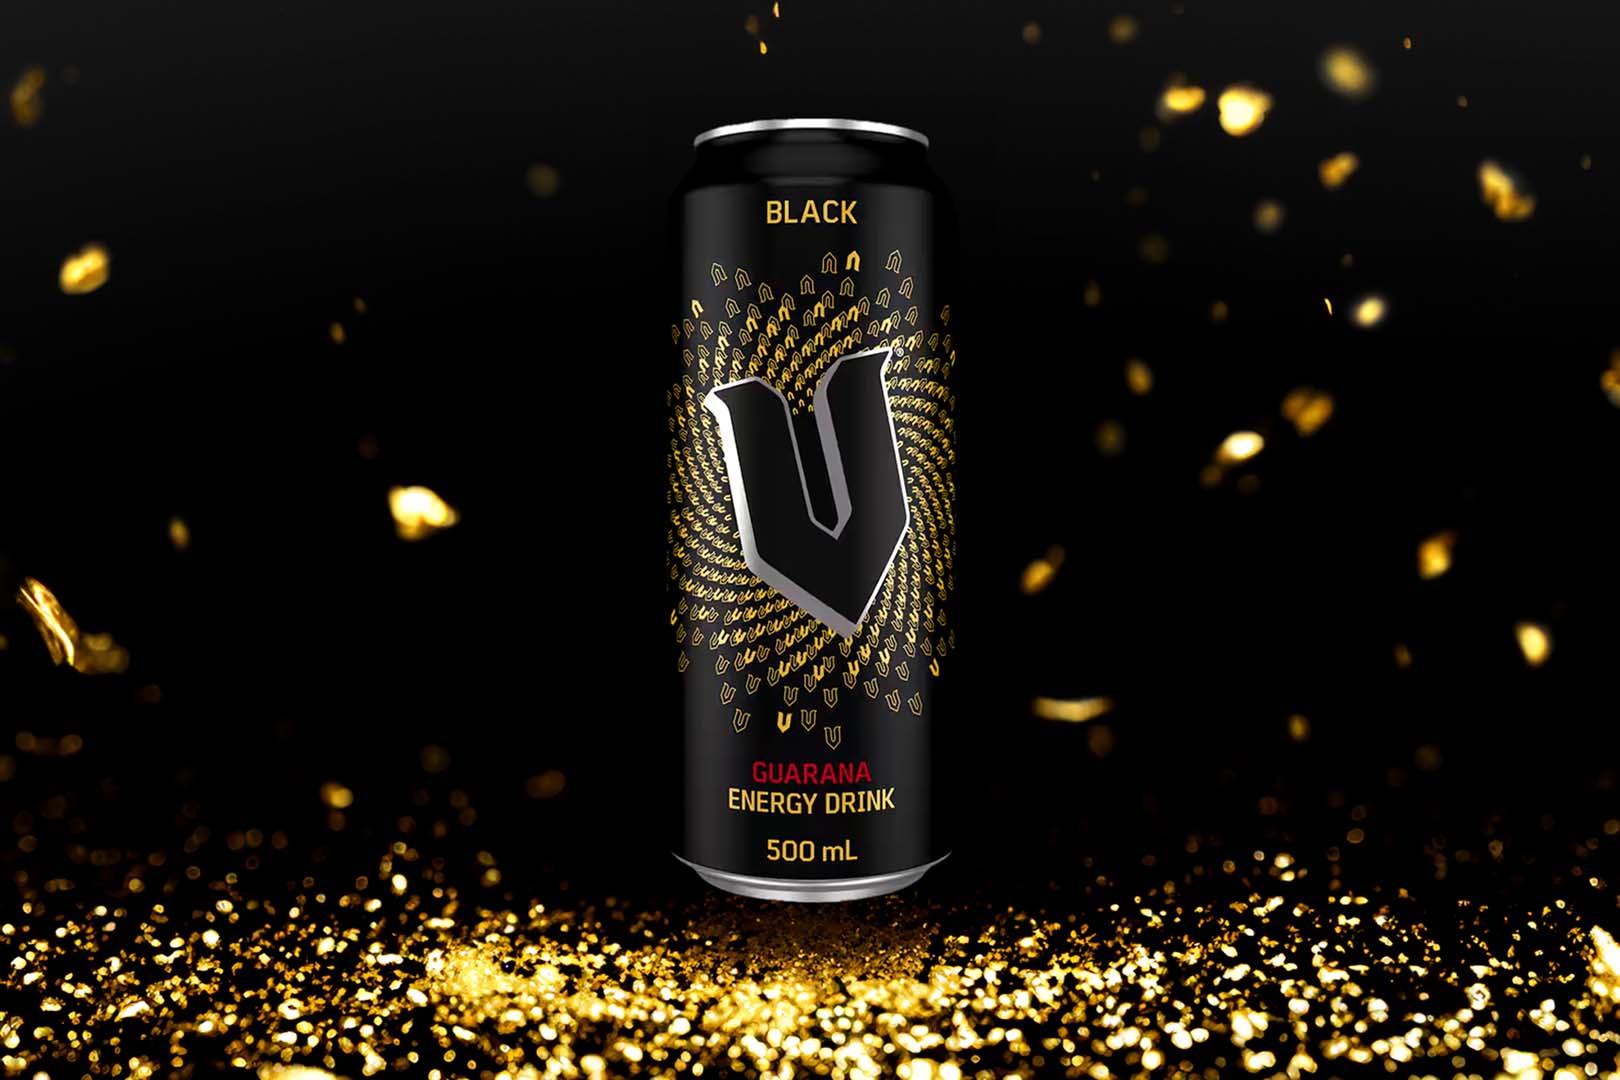 Return Of Black V Energy Drink